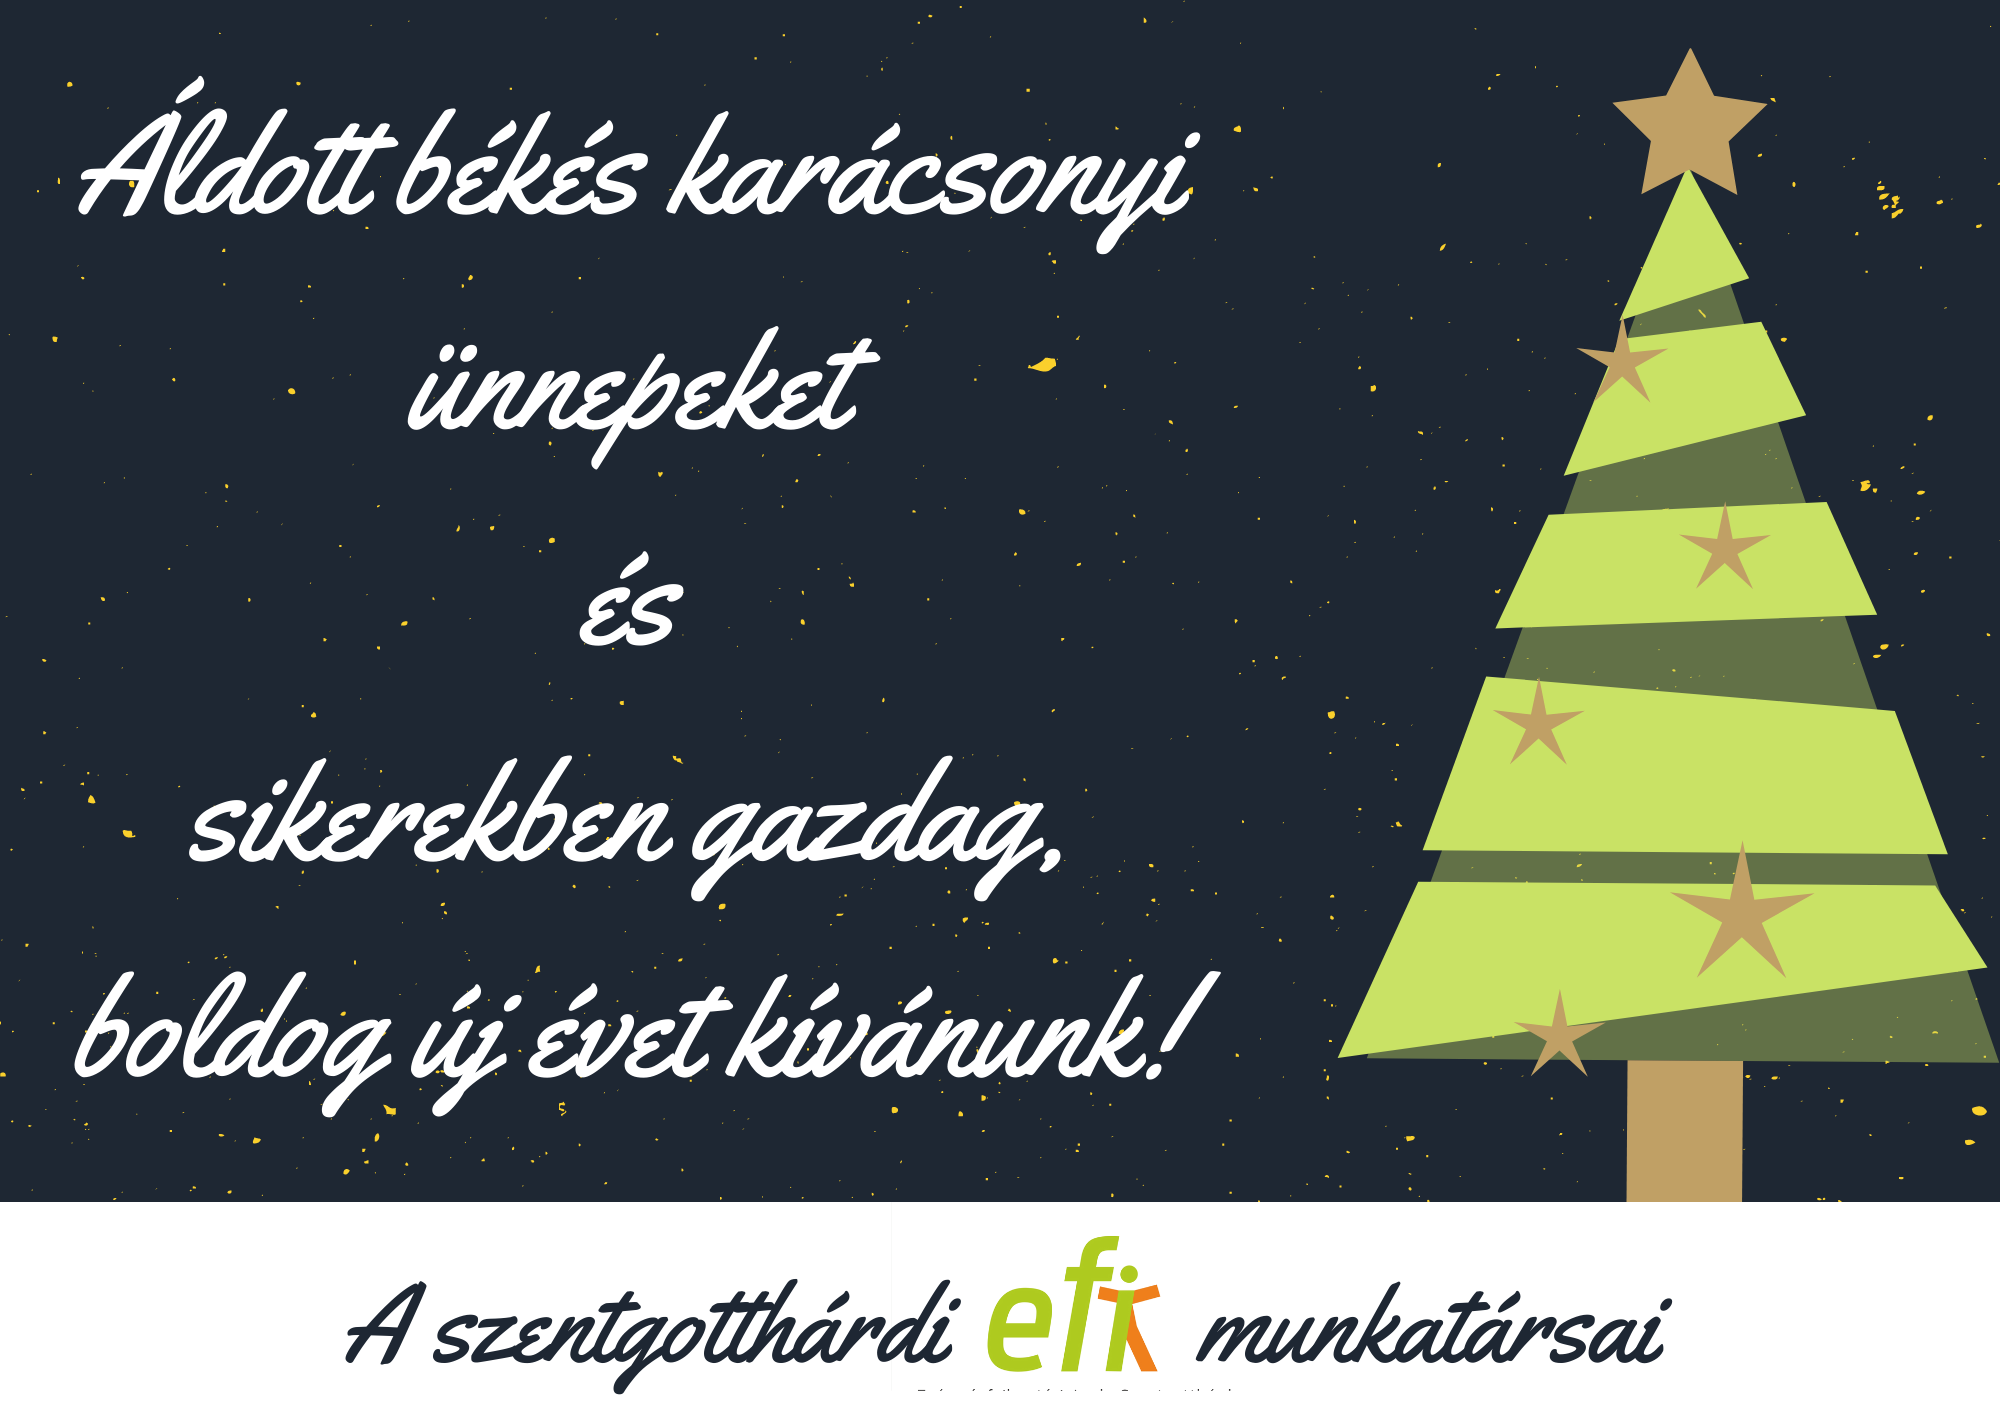 Áldott békés karácsonyi ünnepeket és sikerekben gazdag, boldog új évet kívánunk! A szentgotthárdi EFI munkatársai